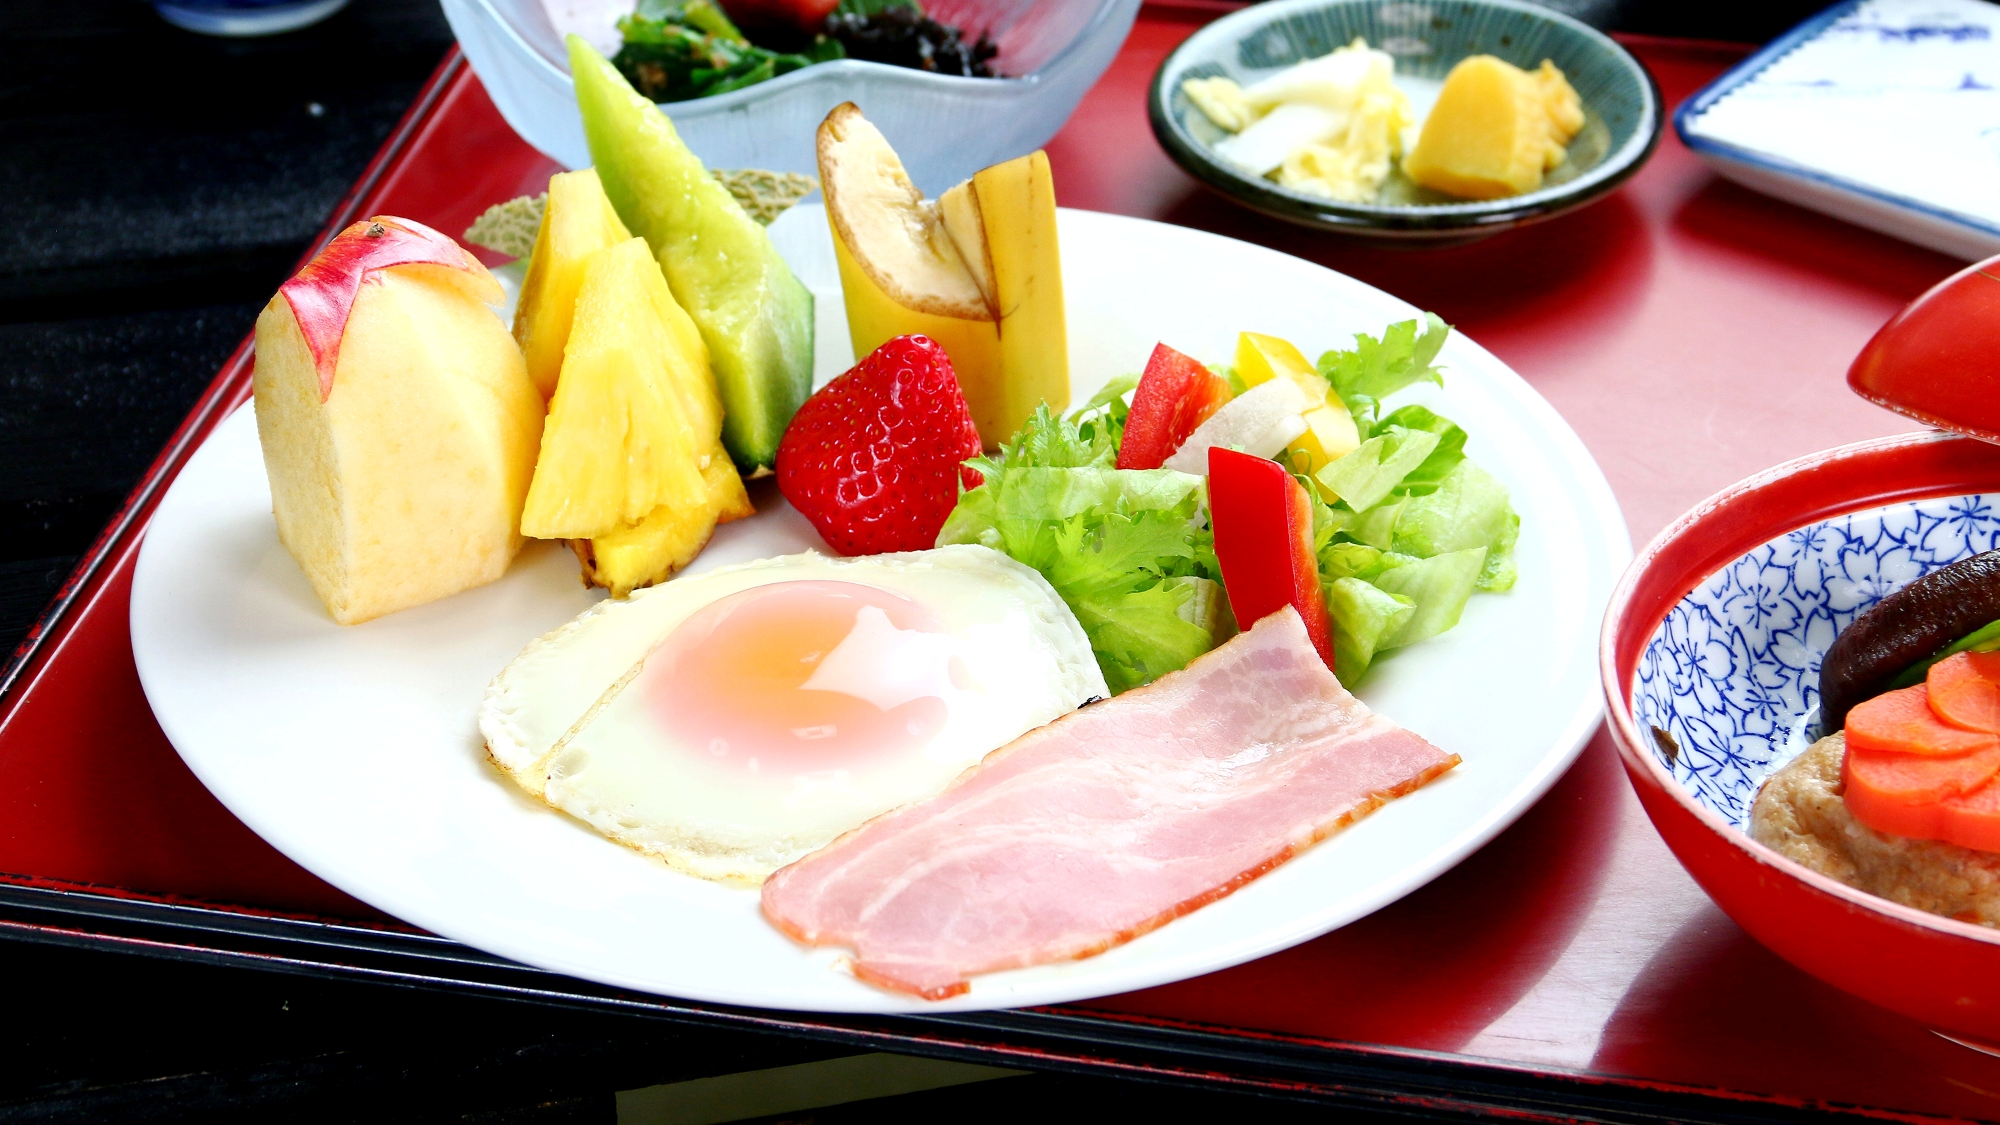 【食事】朝食。自家栽培野菜と季節のフルーツ、手作りのおかずが体にしみわたる・・・田舎の朝ごはんです。